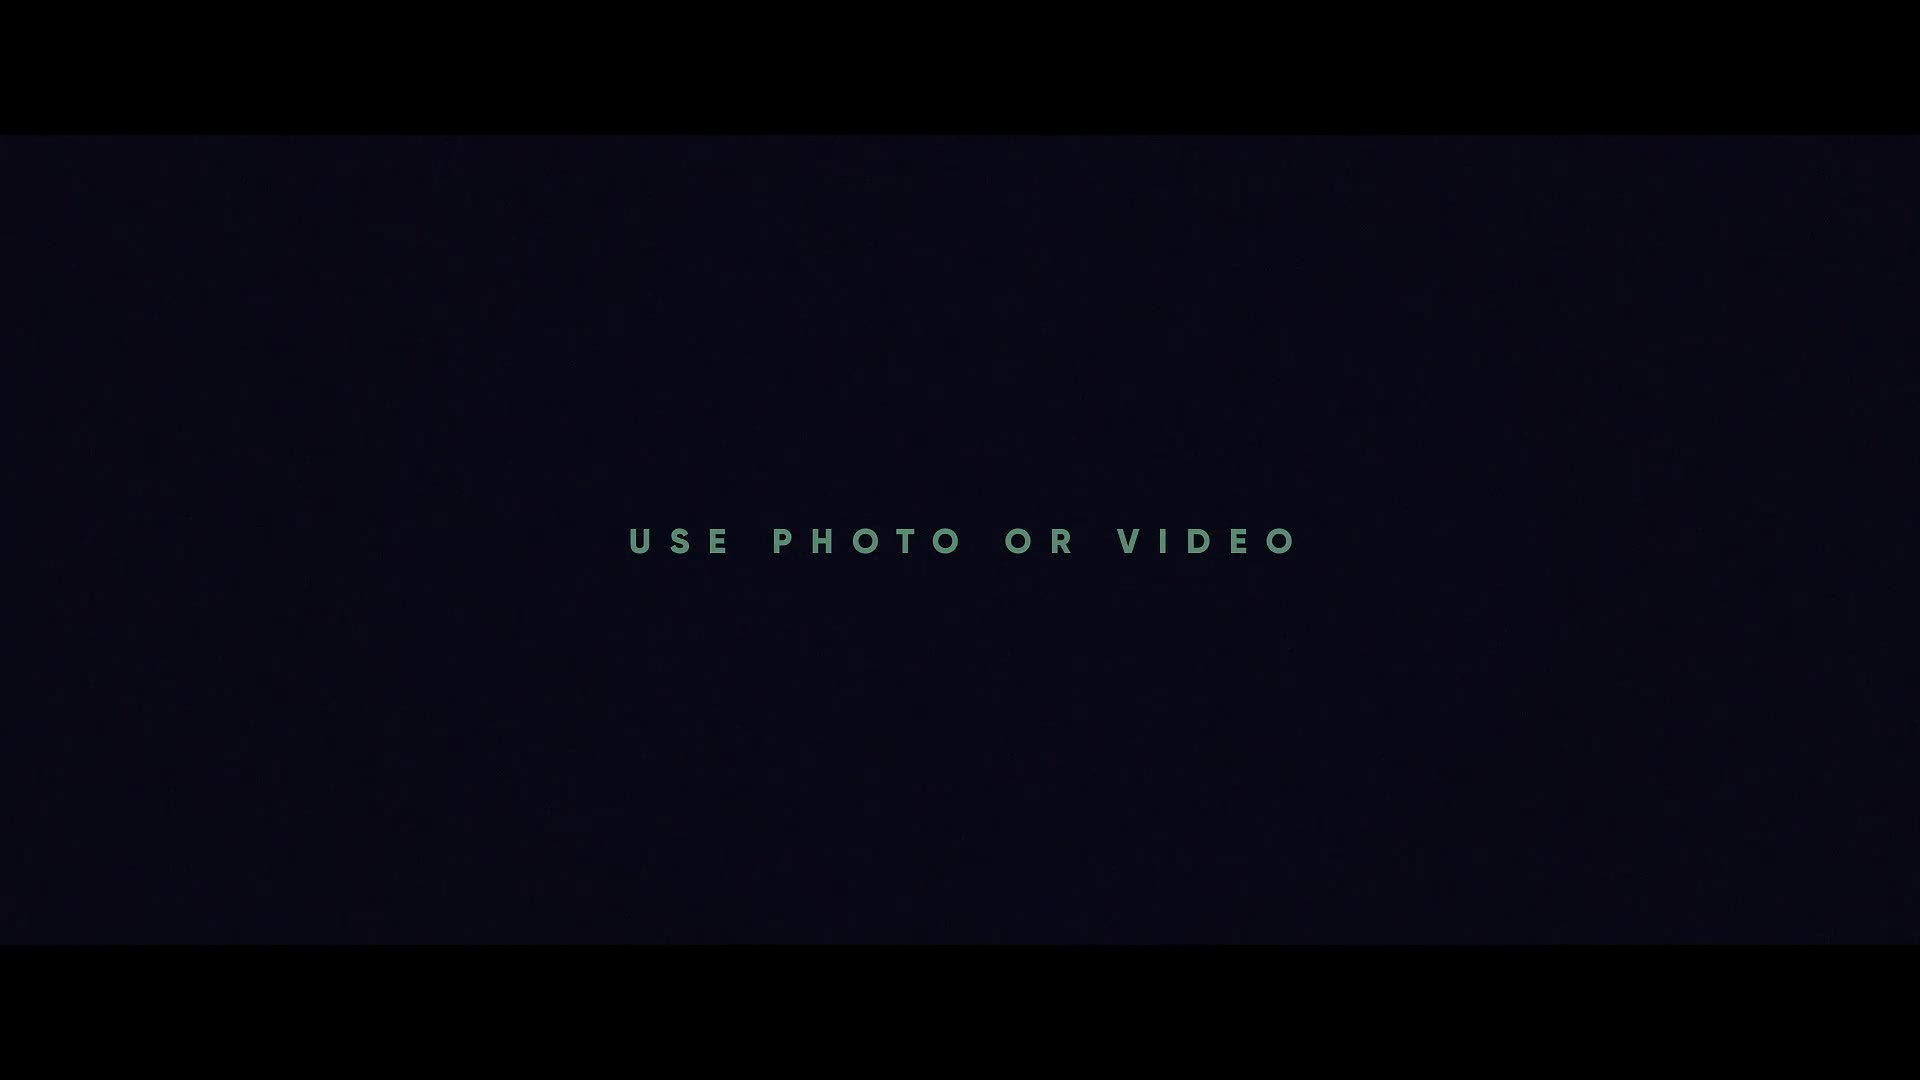 Techno Shapes Digital Slideshow Videohive 28805782 Premiere Pro Image 12